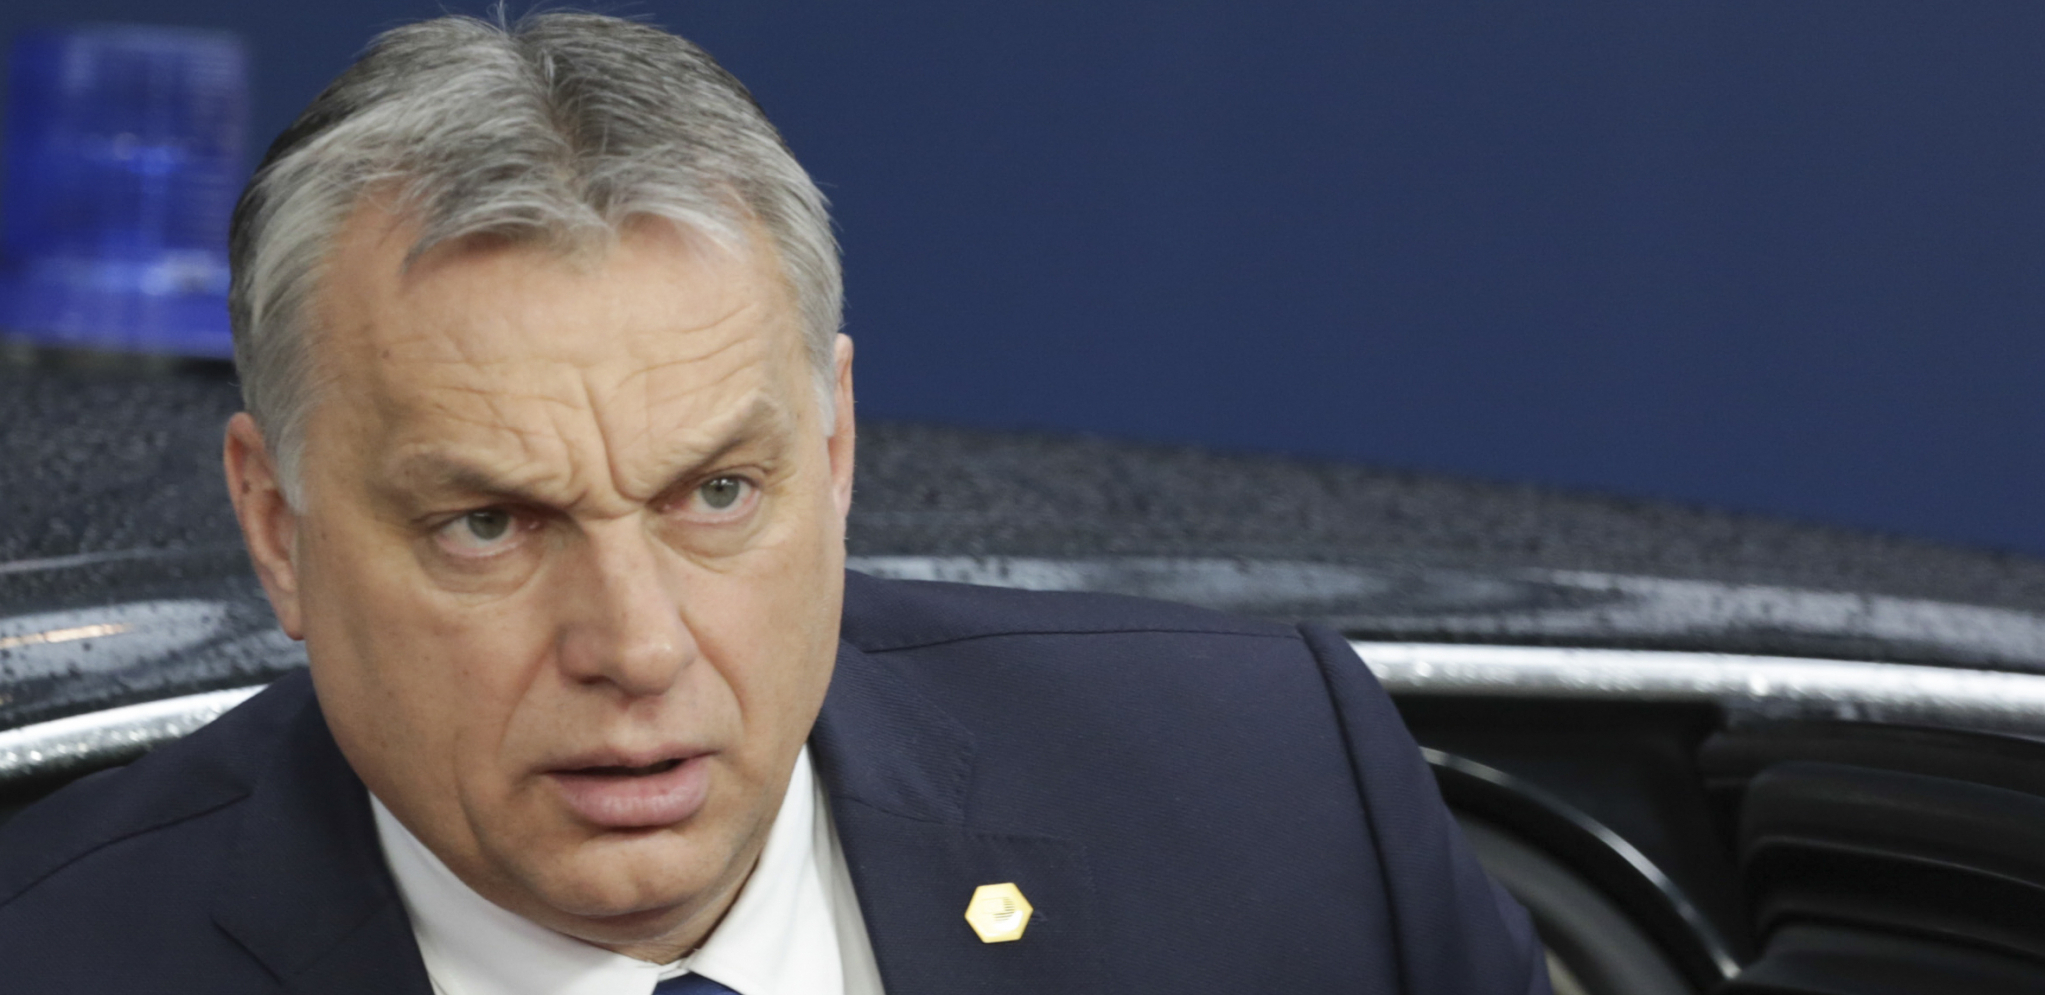 "MI ĆEMO ČUVATI HRIŠĆANSKE KORENE DRŽAVE!" Orban opet žestoko napa EU